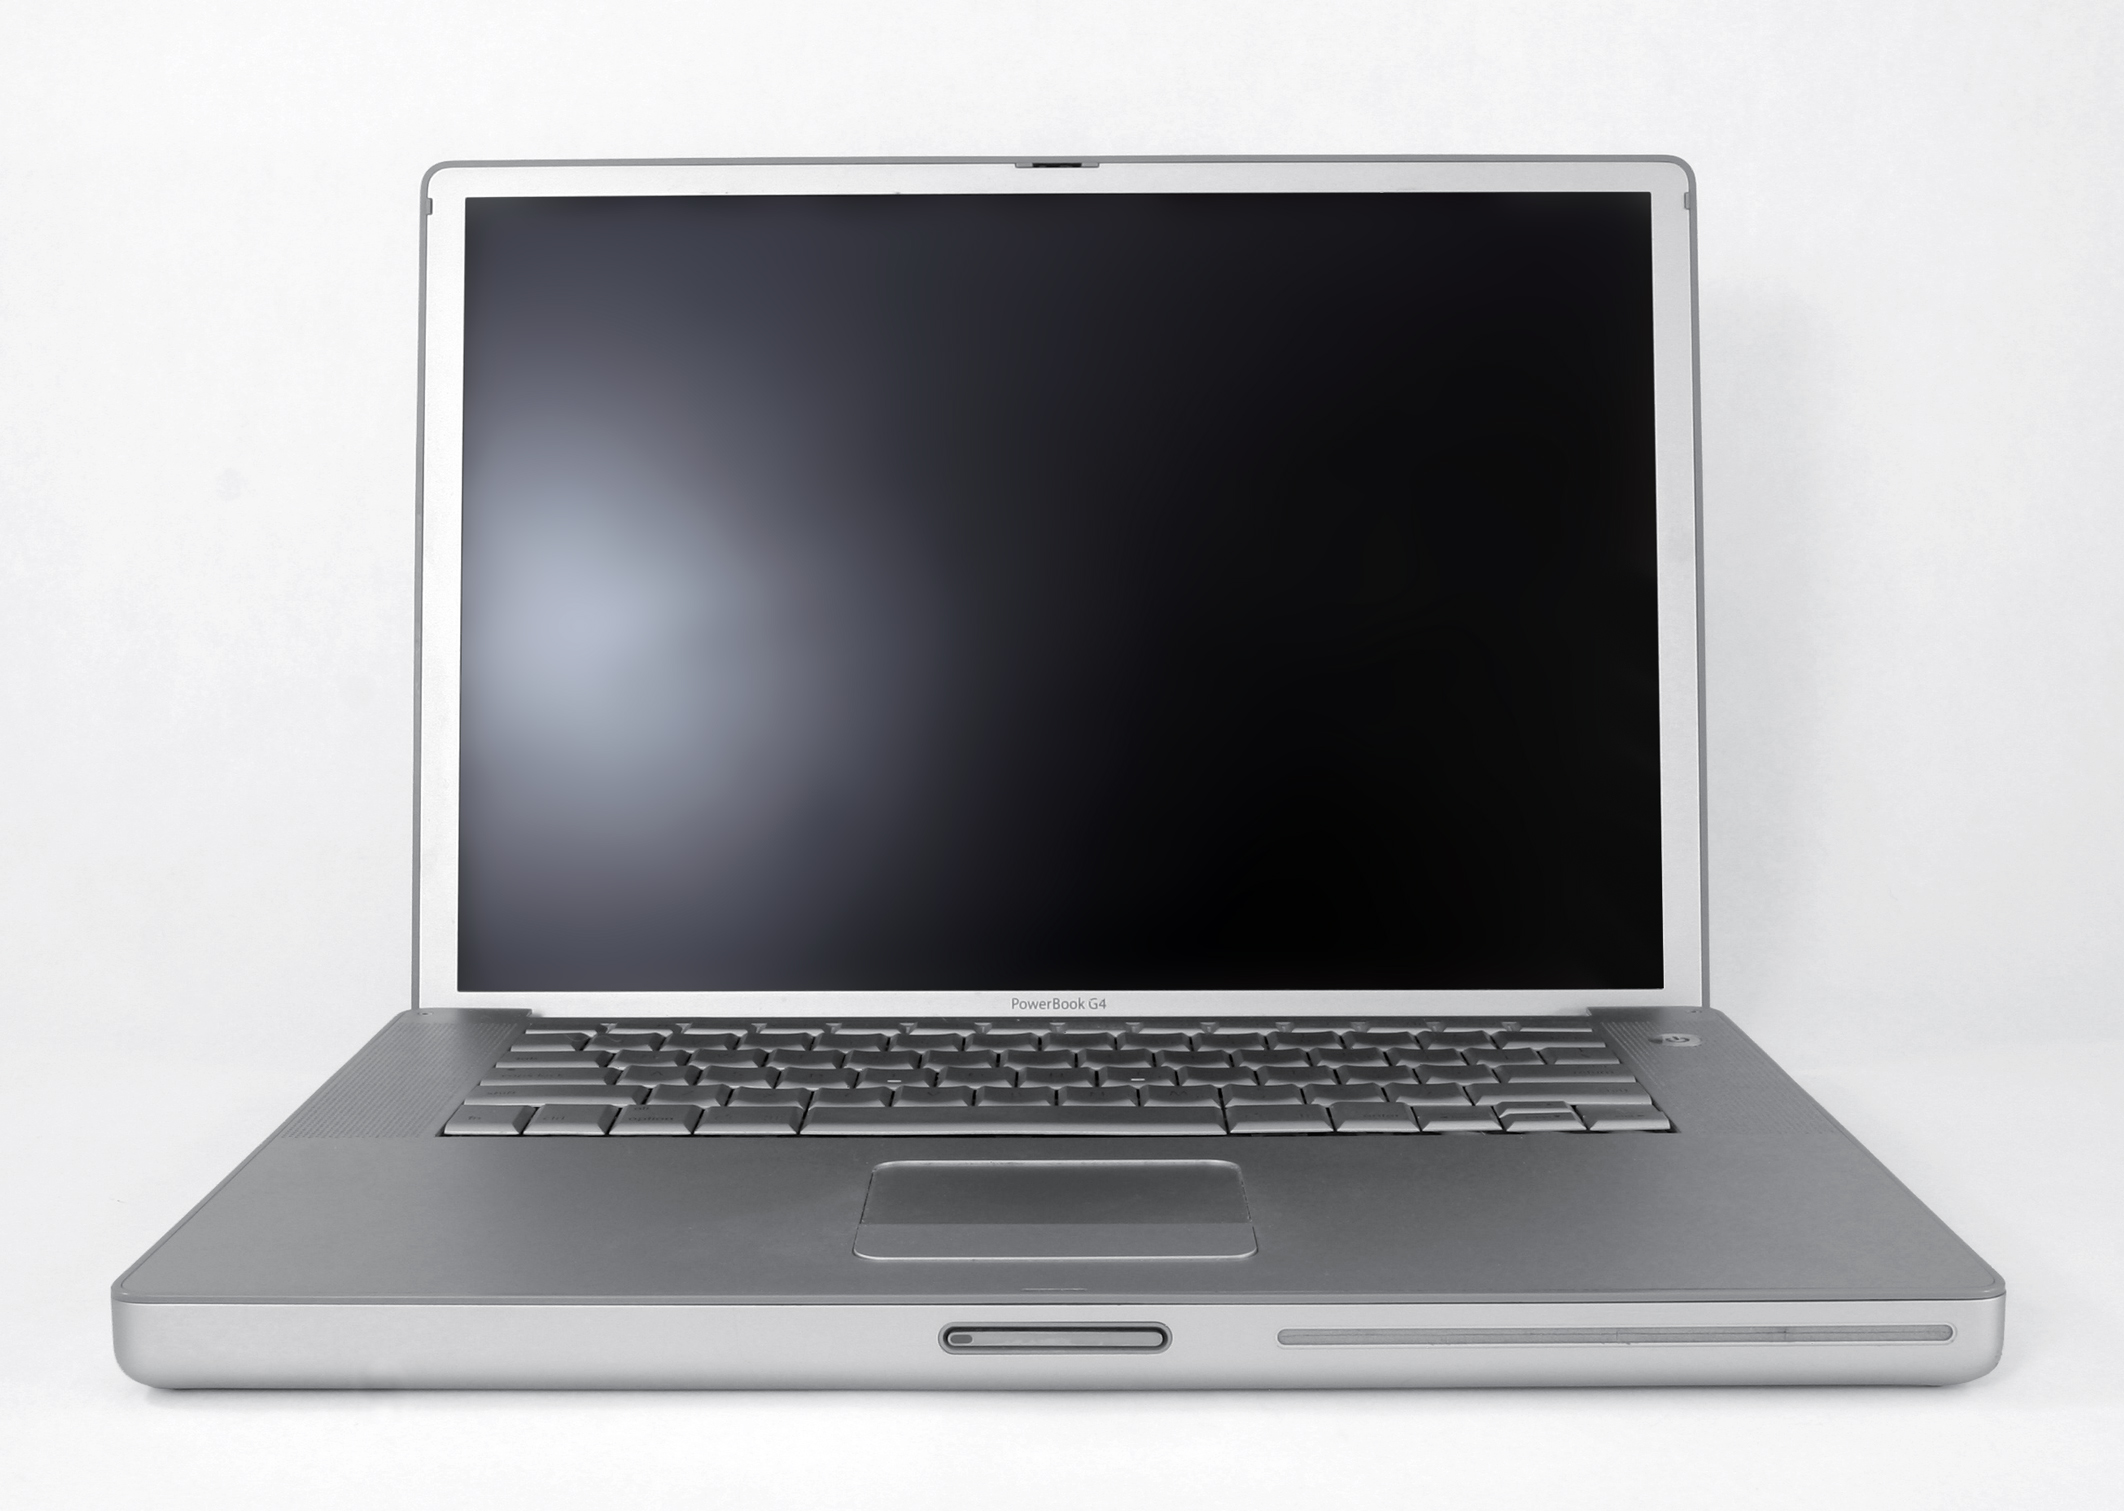 Apple je po prvi puta u svojim računalima počeo koristiti karakteristični aluminij 2003. godine, kada su predstavili laptop Powerbook u veličinama od 12 i 17 inča. Maleno računalo od 12 inča smatralo se snažnim za svoju veličinu, dok se ono od 17 inča smatralo monstrumom zbog svoje veličine.